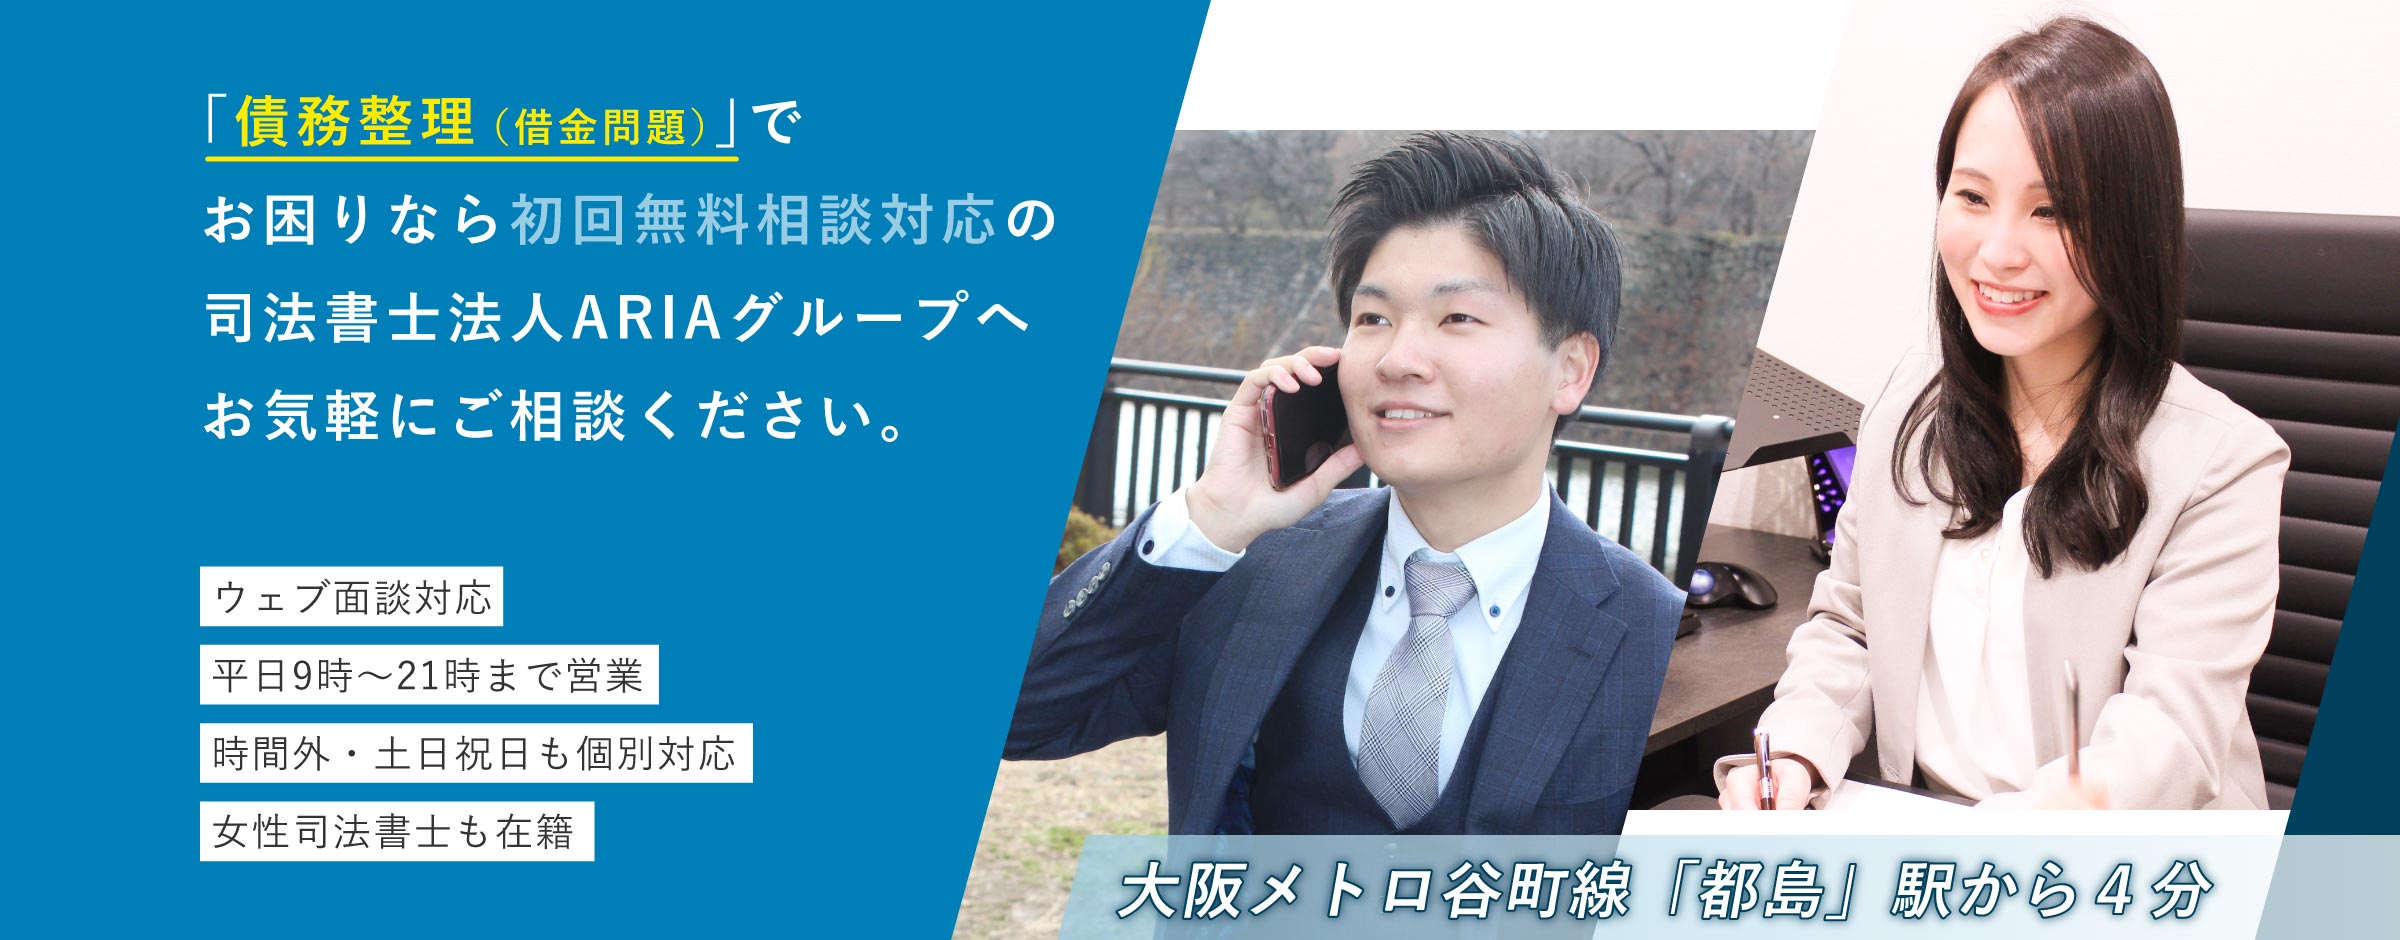 大阪の司法書士による遺言相続・債務整理の無料相談 ARIA司法書士事務所